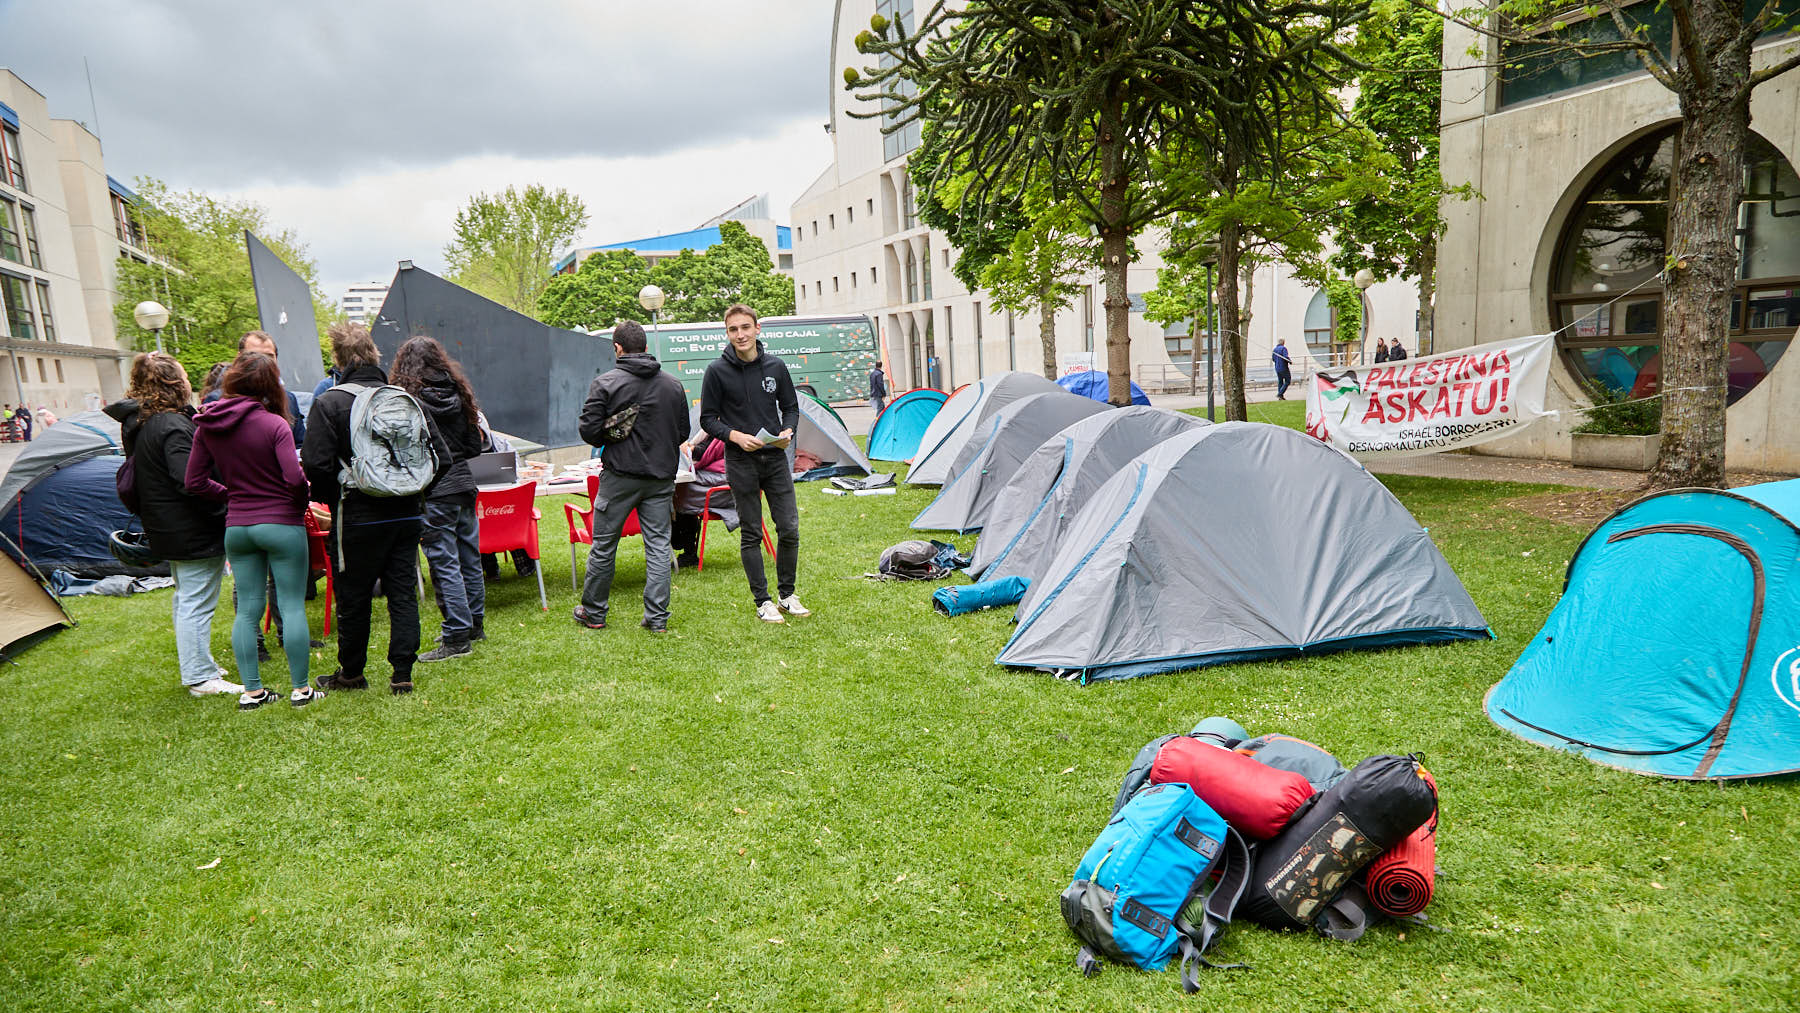 La UPNA autoriza la acampada de 40 estudiantes en el campus de Pamplona con tiendas de campaña